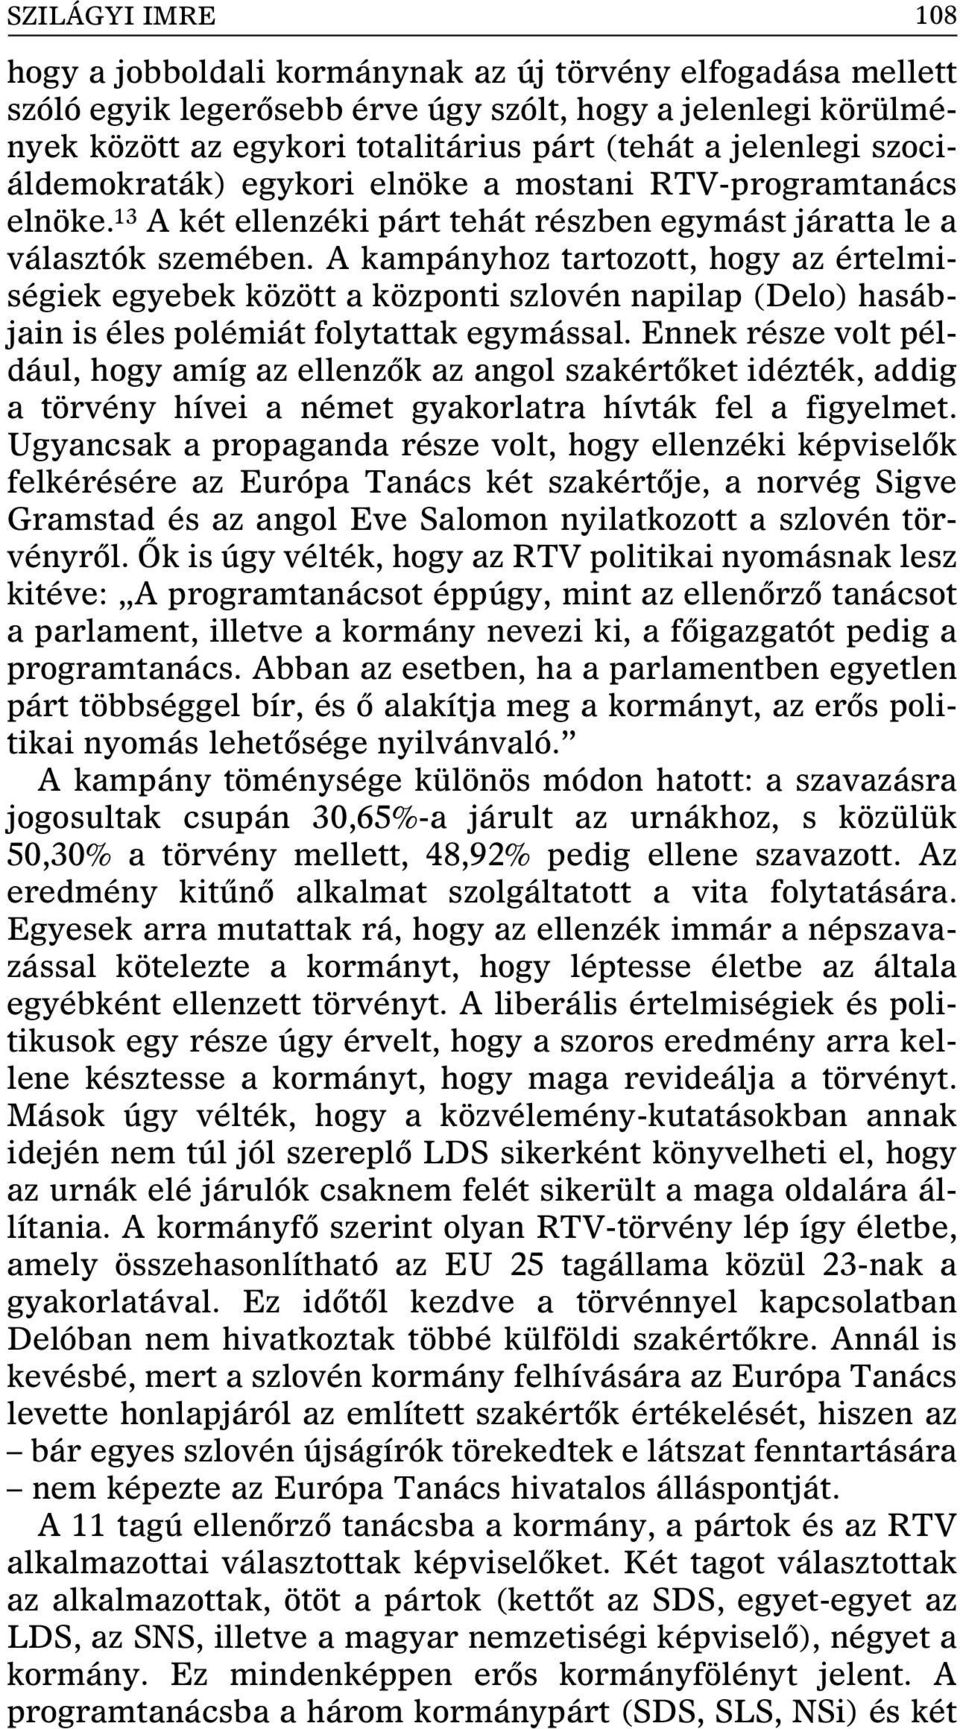 A kampányhoz tartozott, hogy az értelmiségiek egyebek között a központi szlovén napilap (Delo) hasábjain is éles polémiát folytattak egymással.